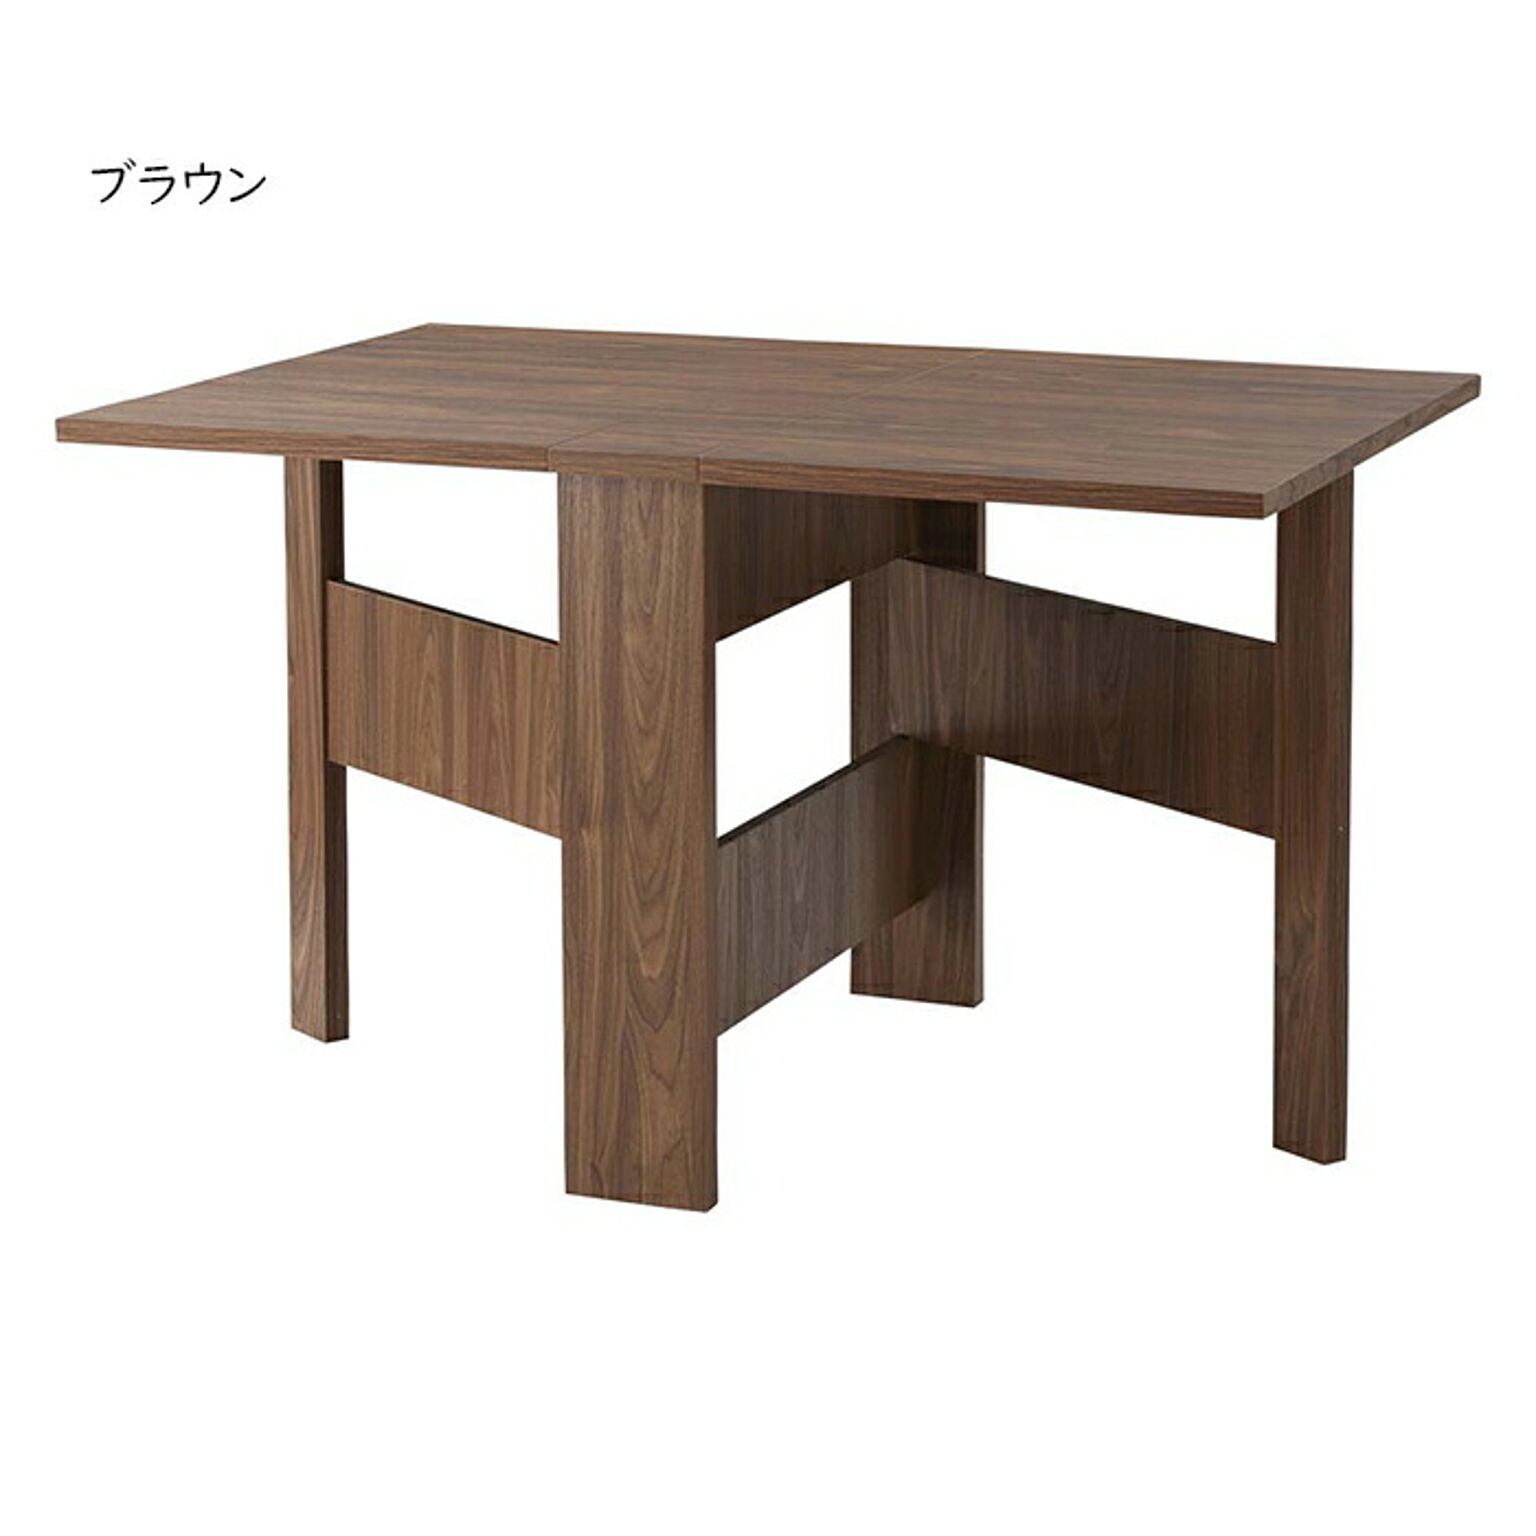 テーブル 組立式 折りたたみ式 可変式 フォールディングダイニングテーブル FIK-103 幅120x奥行80x高さ72cm 東谷